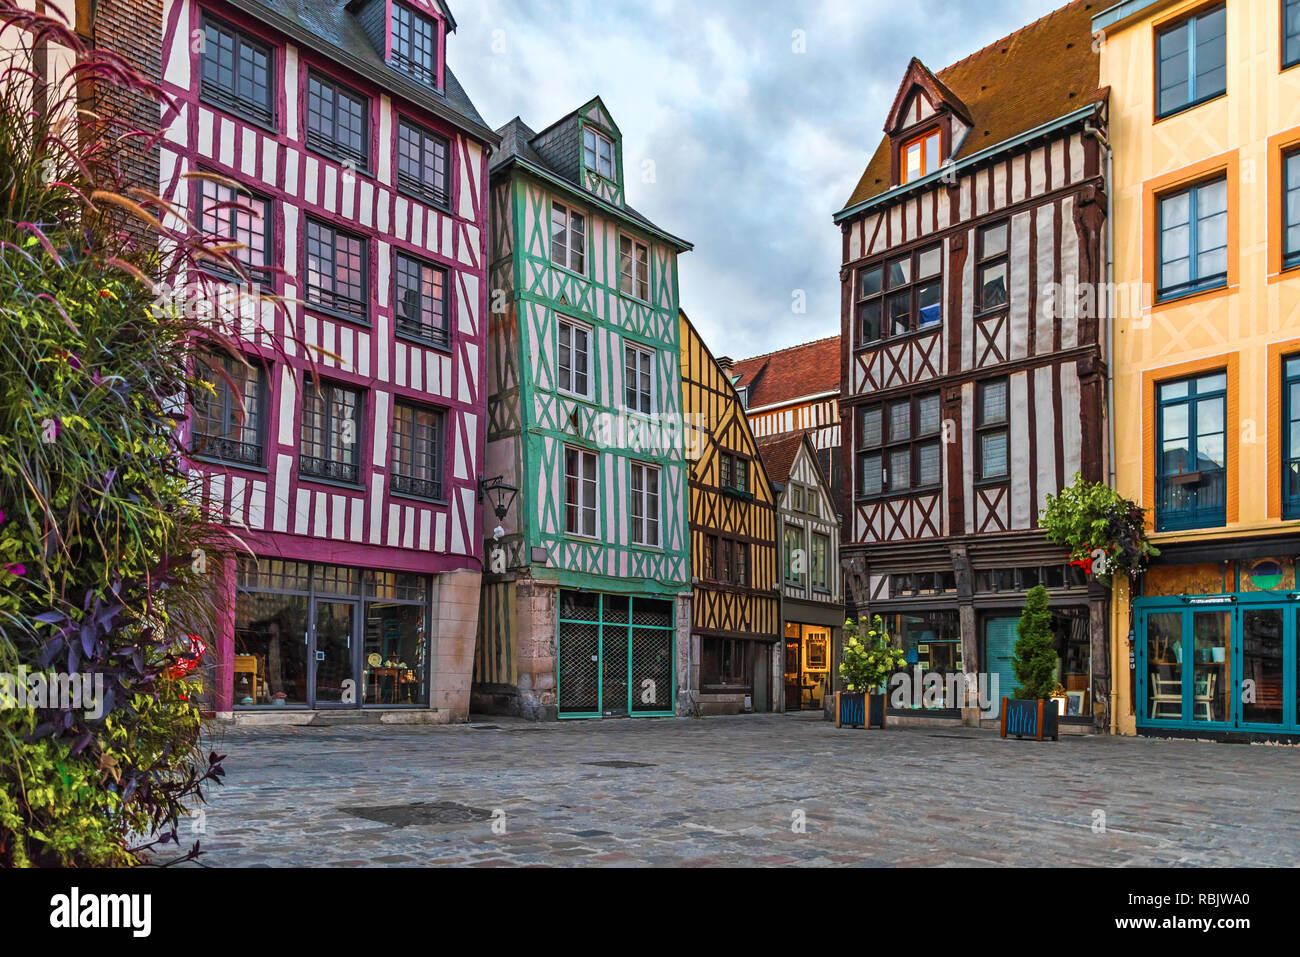 Piazza medievale con le tipiche case nel centro storico di Rouen, Normandia, Francia con nessuno Foto Stock